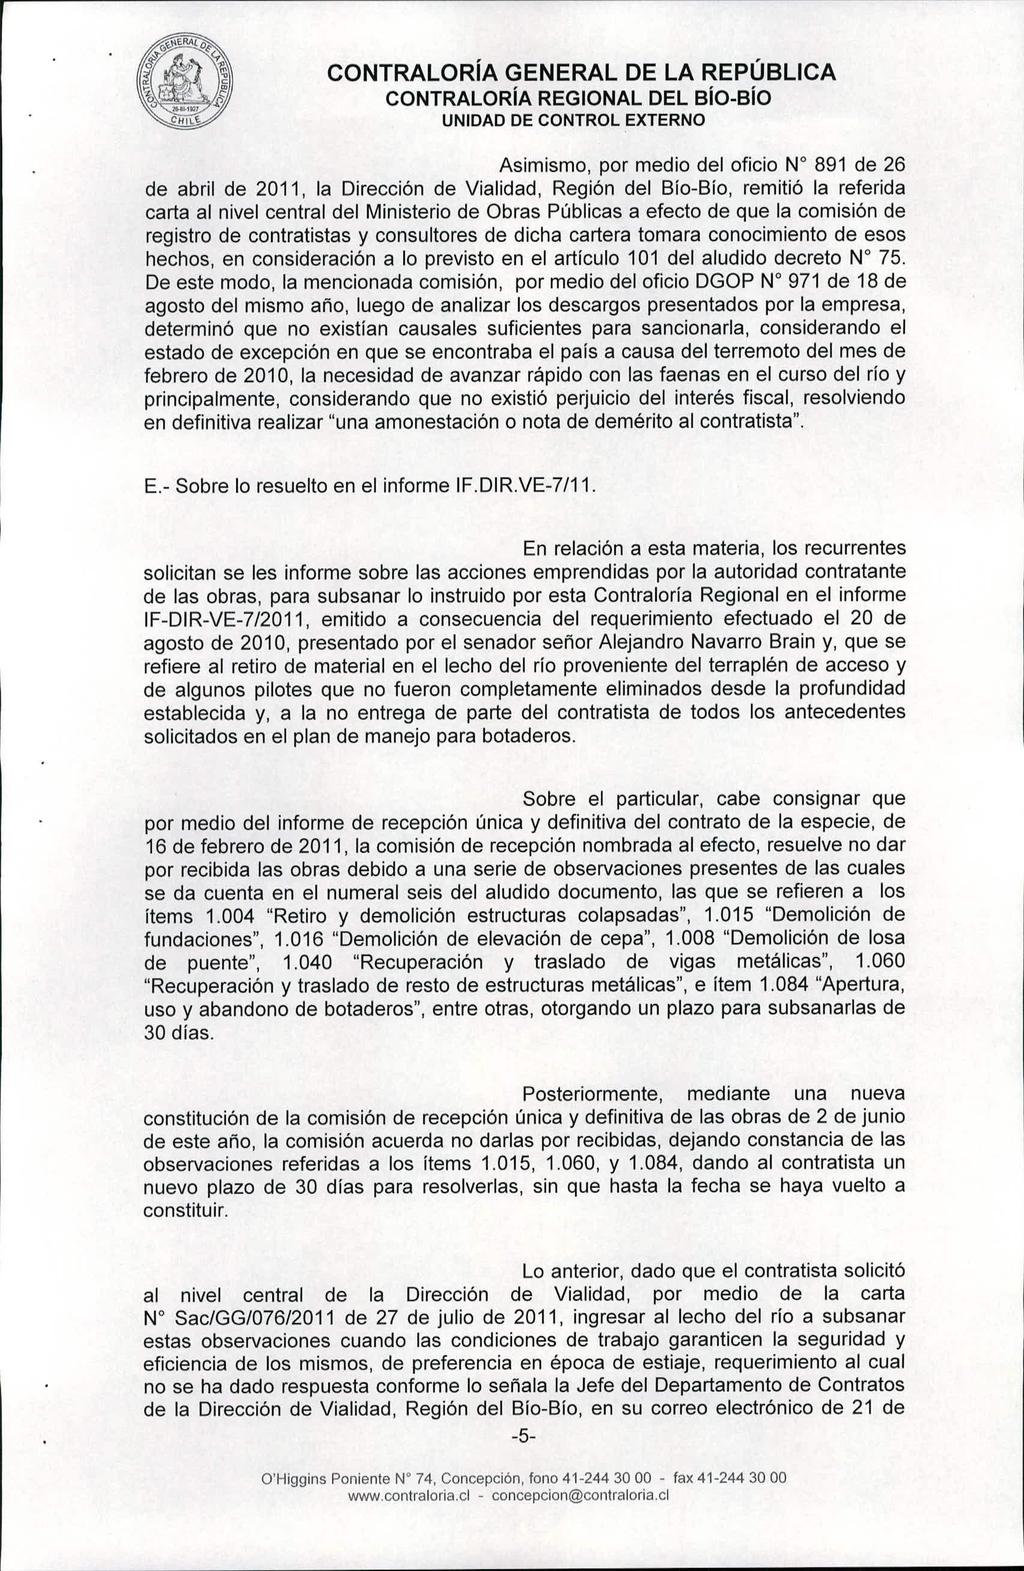 CONTRALORíA REGIONAL DEL BíO-Bío Asimismo, por medio del oficio W 891 de 26 de abril de 2011, la Dirección de Vialidad, Región del Blo-Bio, remitió la referida carta al nivel central del Ministerio